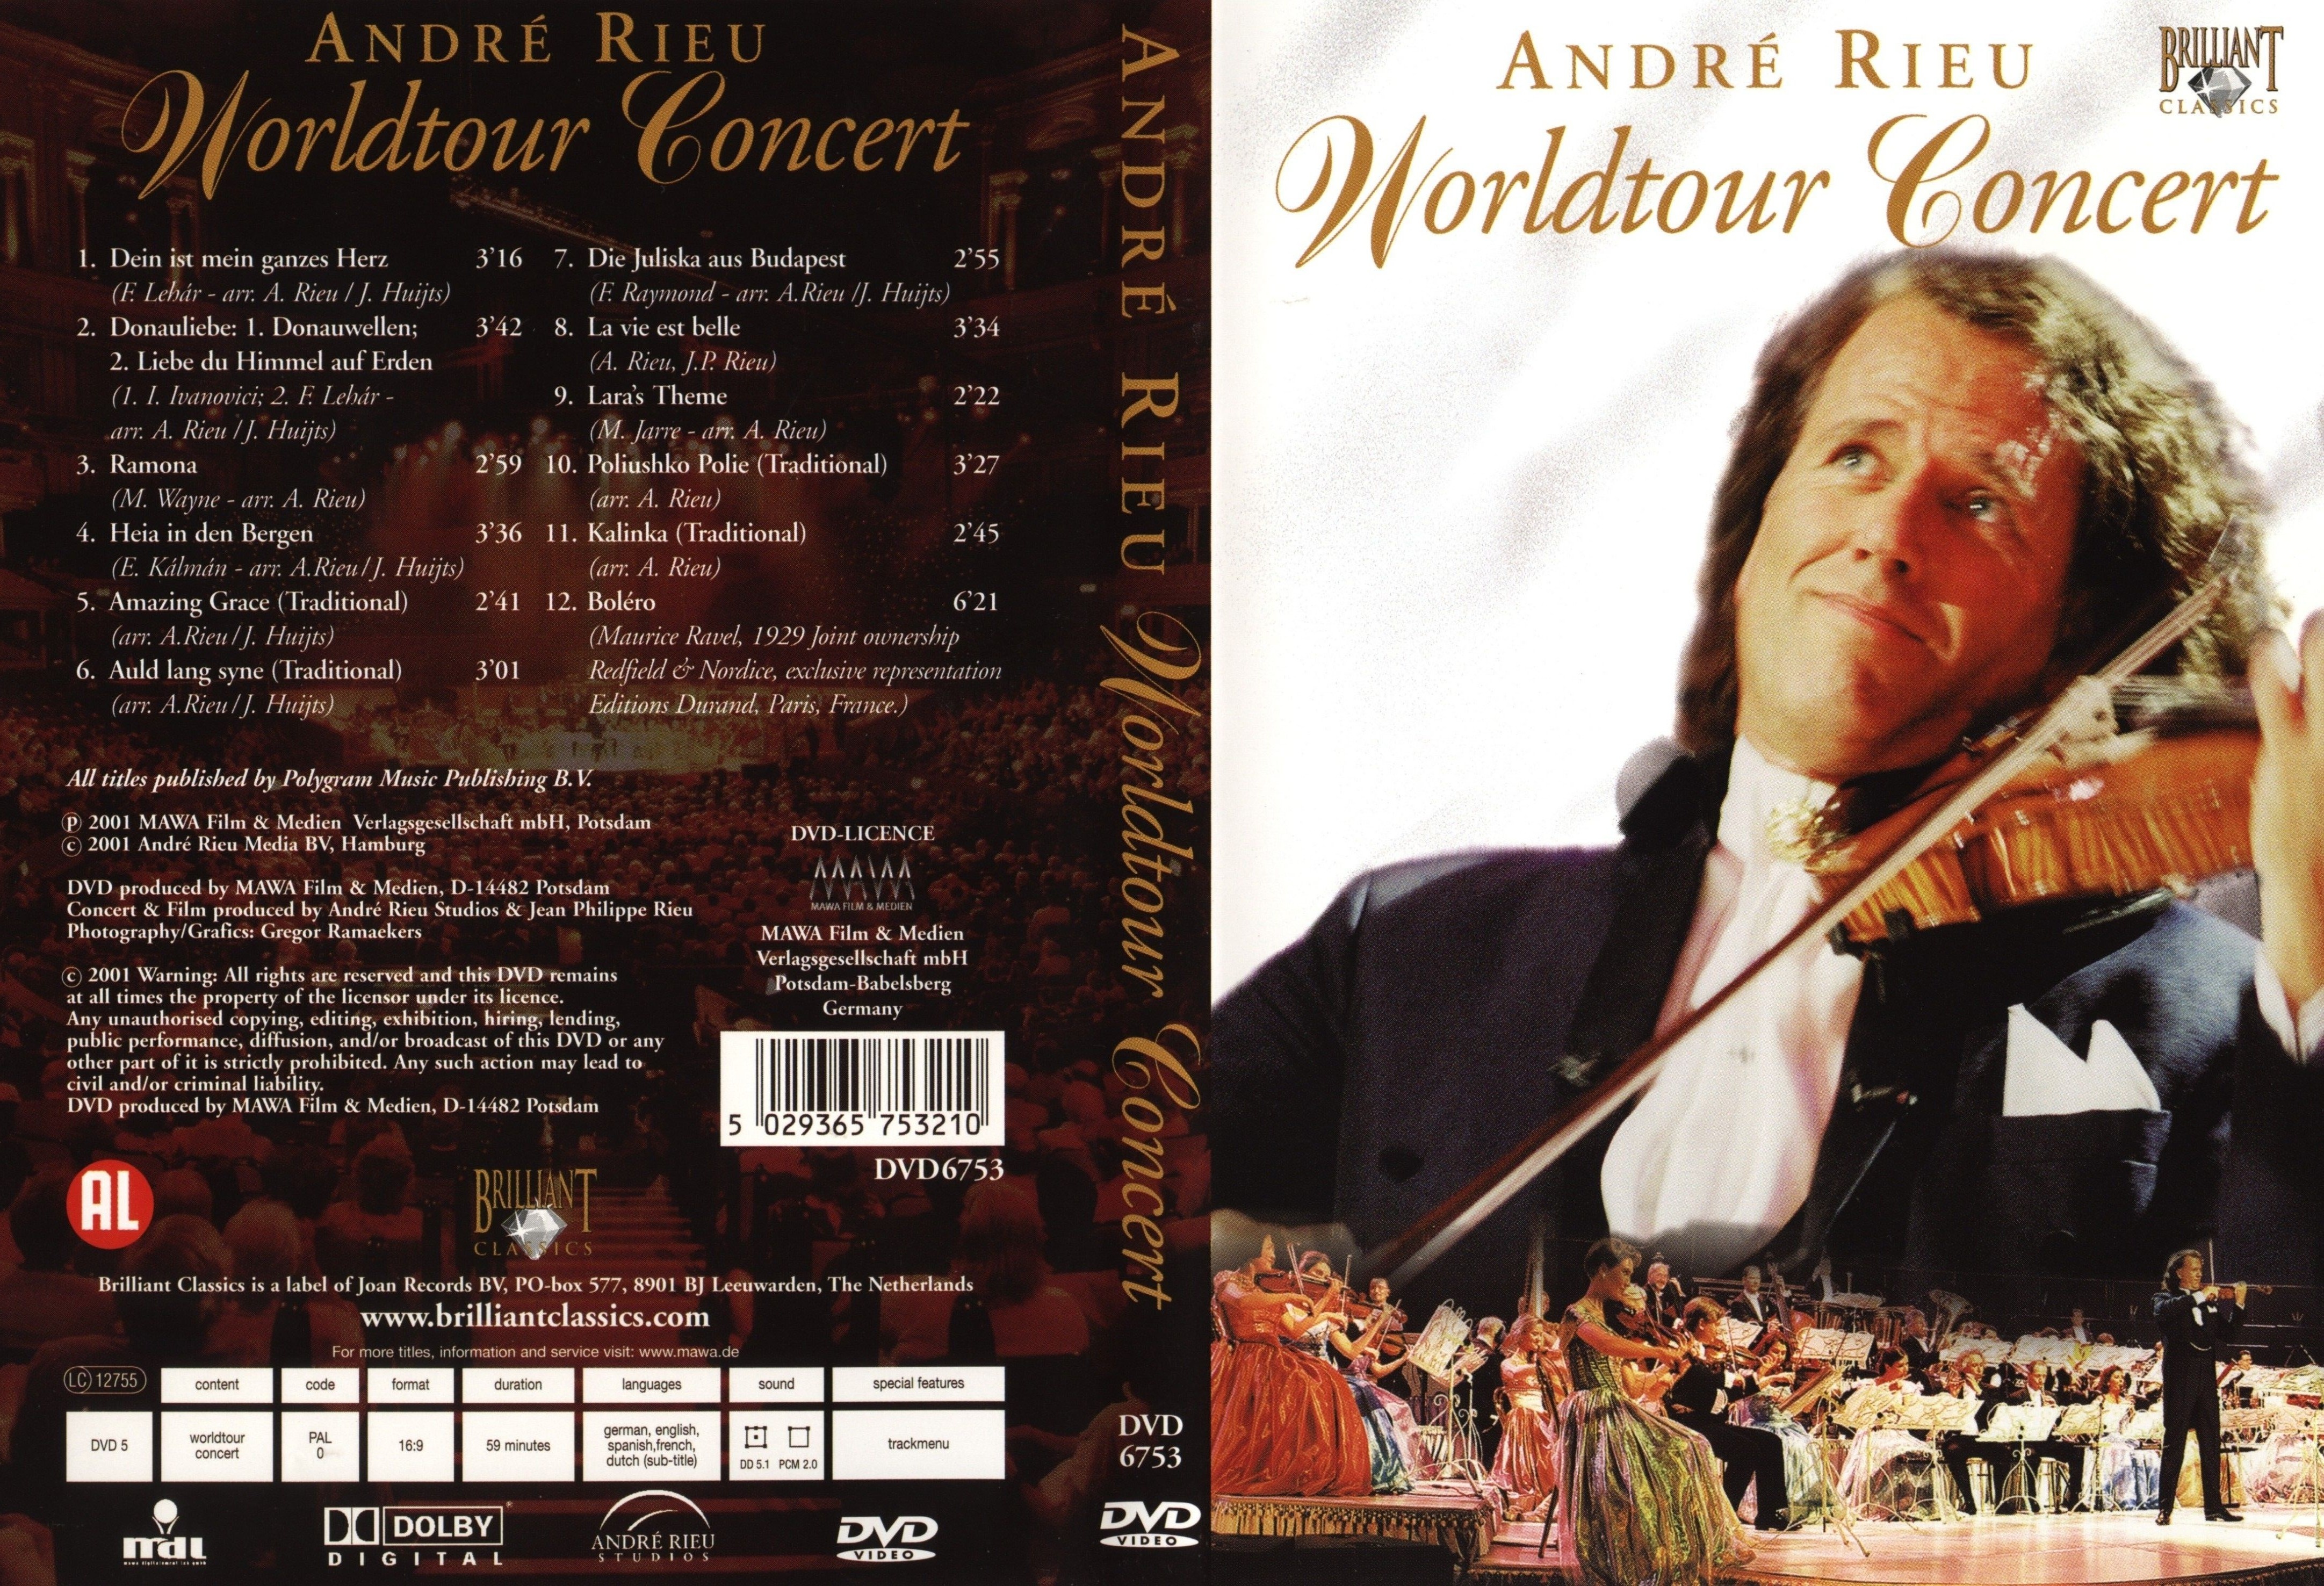 Jaquette DVD Andre Rieu Worldtour concert